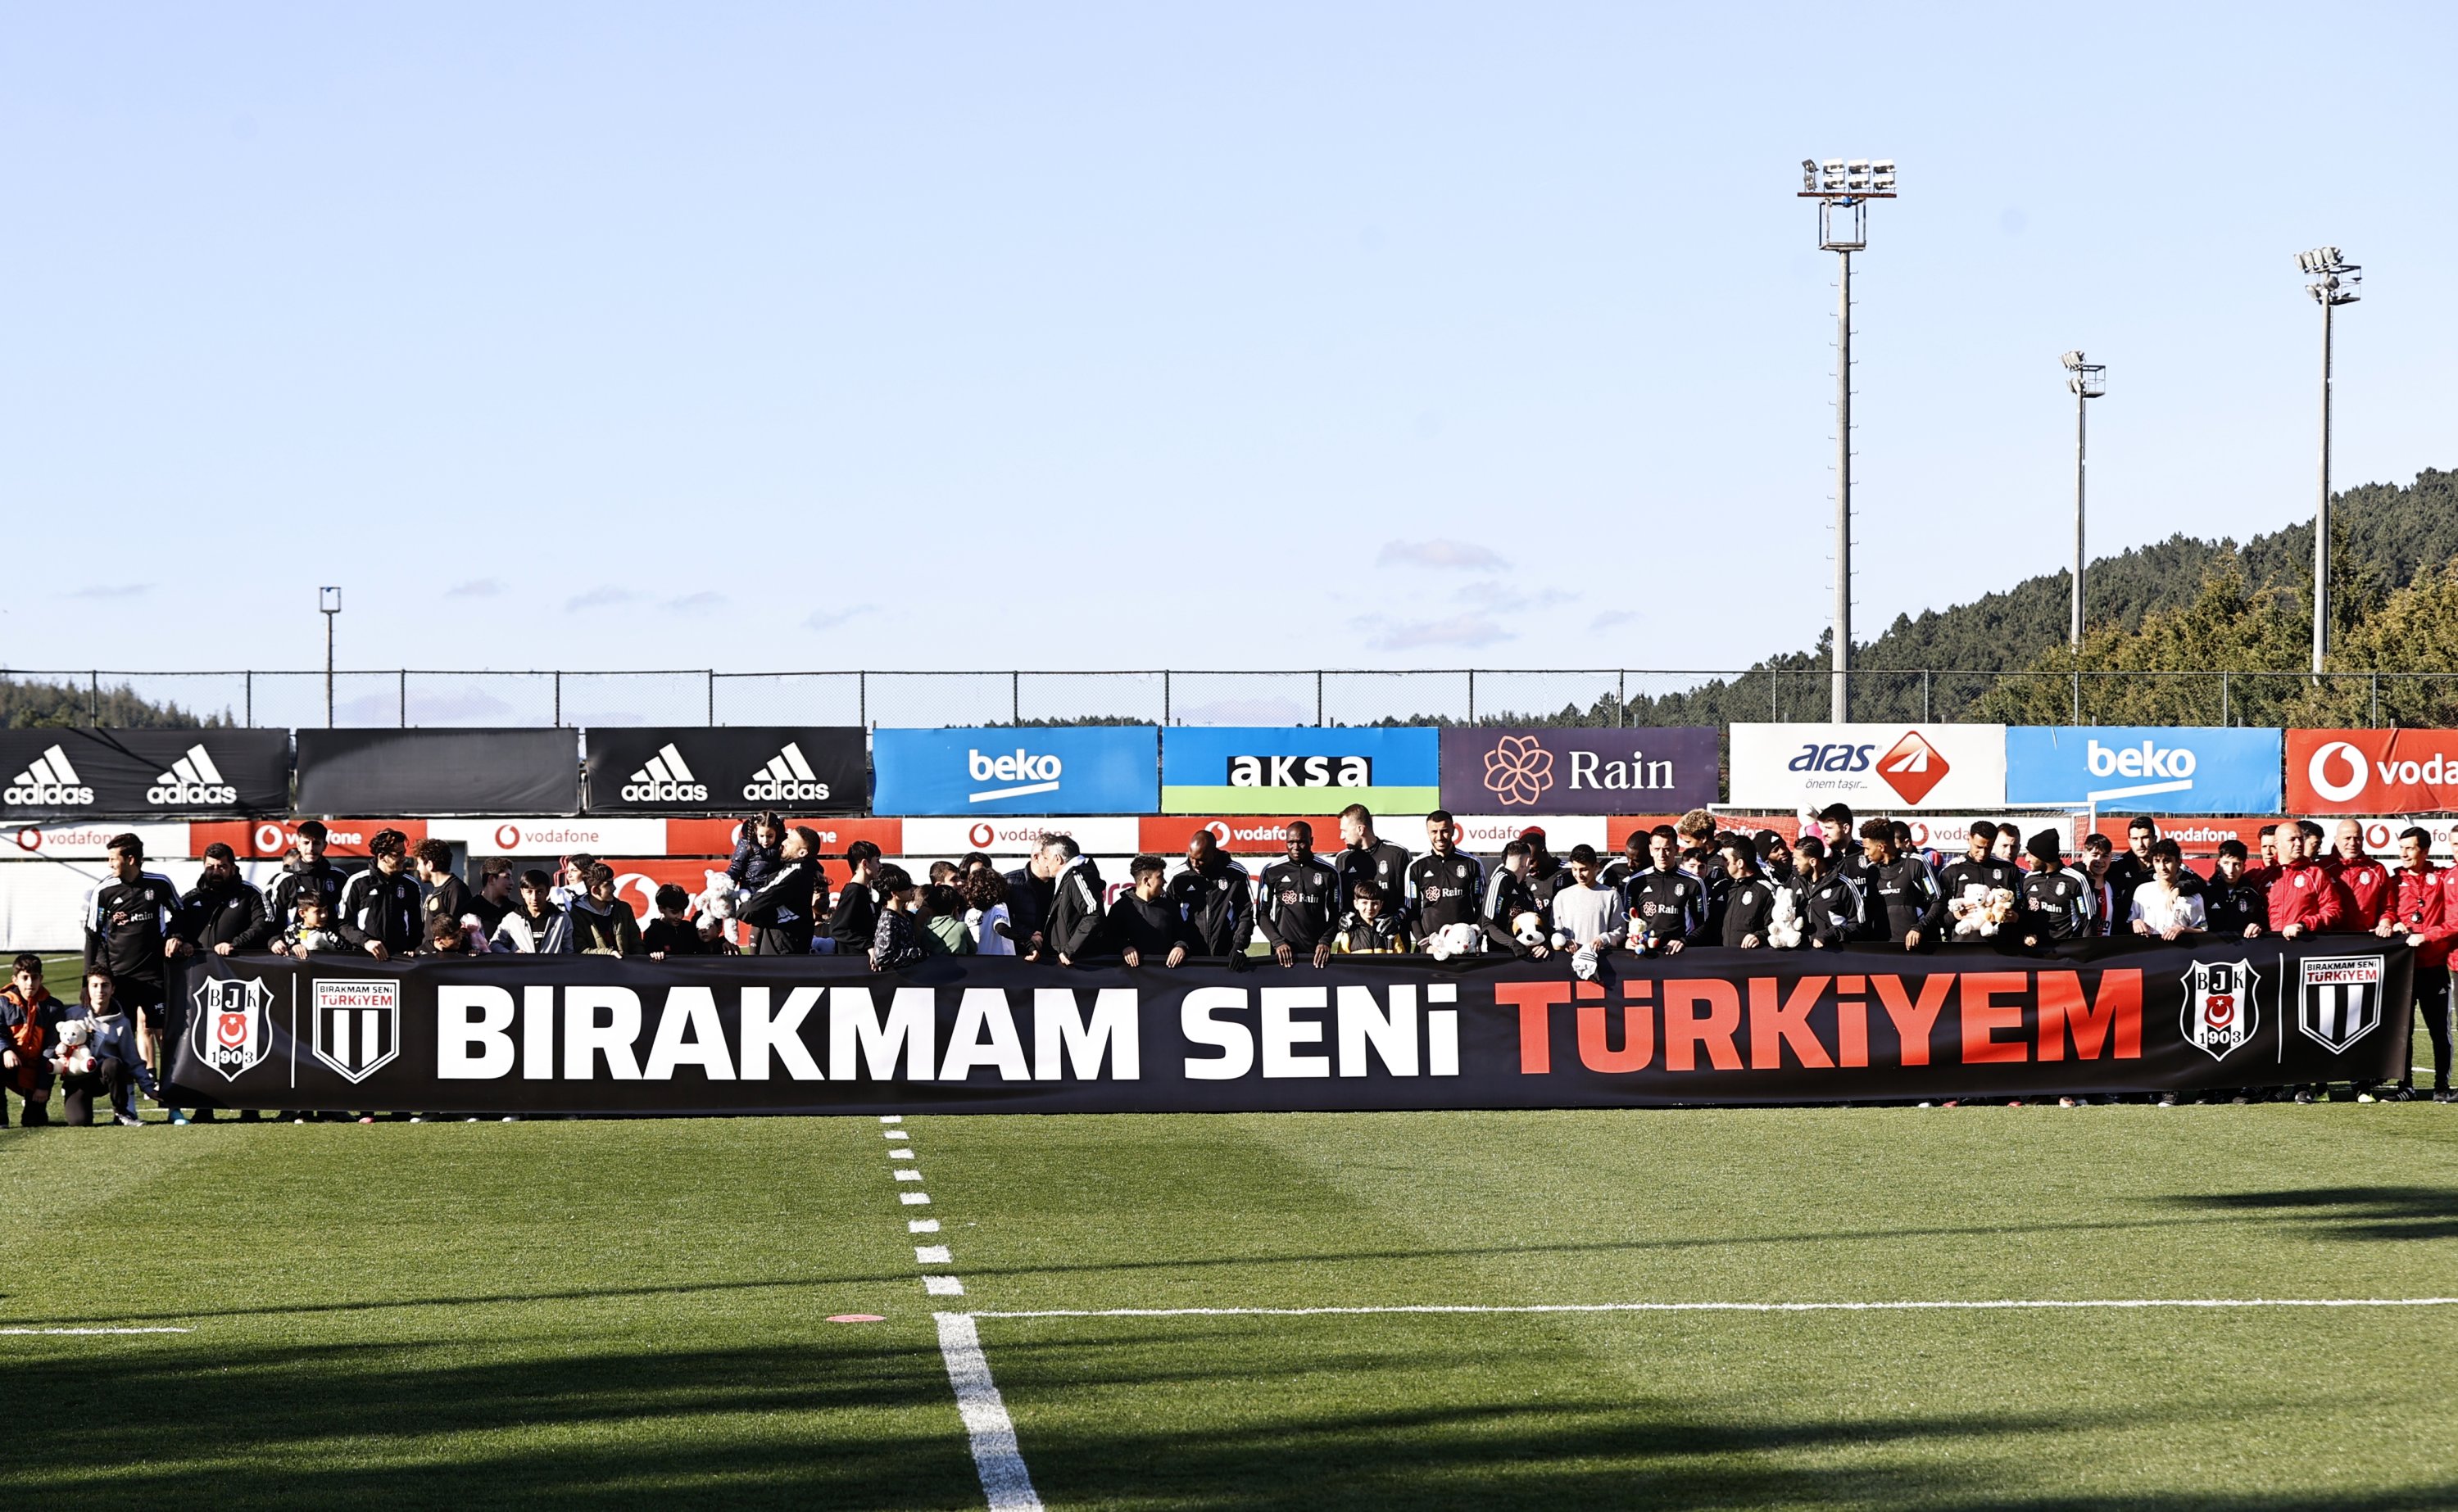 Empat puluh anak dari daerah yang terkena dampak gempa memamerkan spanduk setelah menonton latihan Beşiktaş sebelum pertandingan Istanbulspor, Istanbul, Türkiye, 14 Maret 2023. (Foto AA)